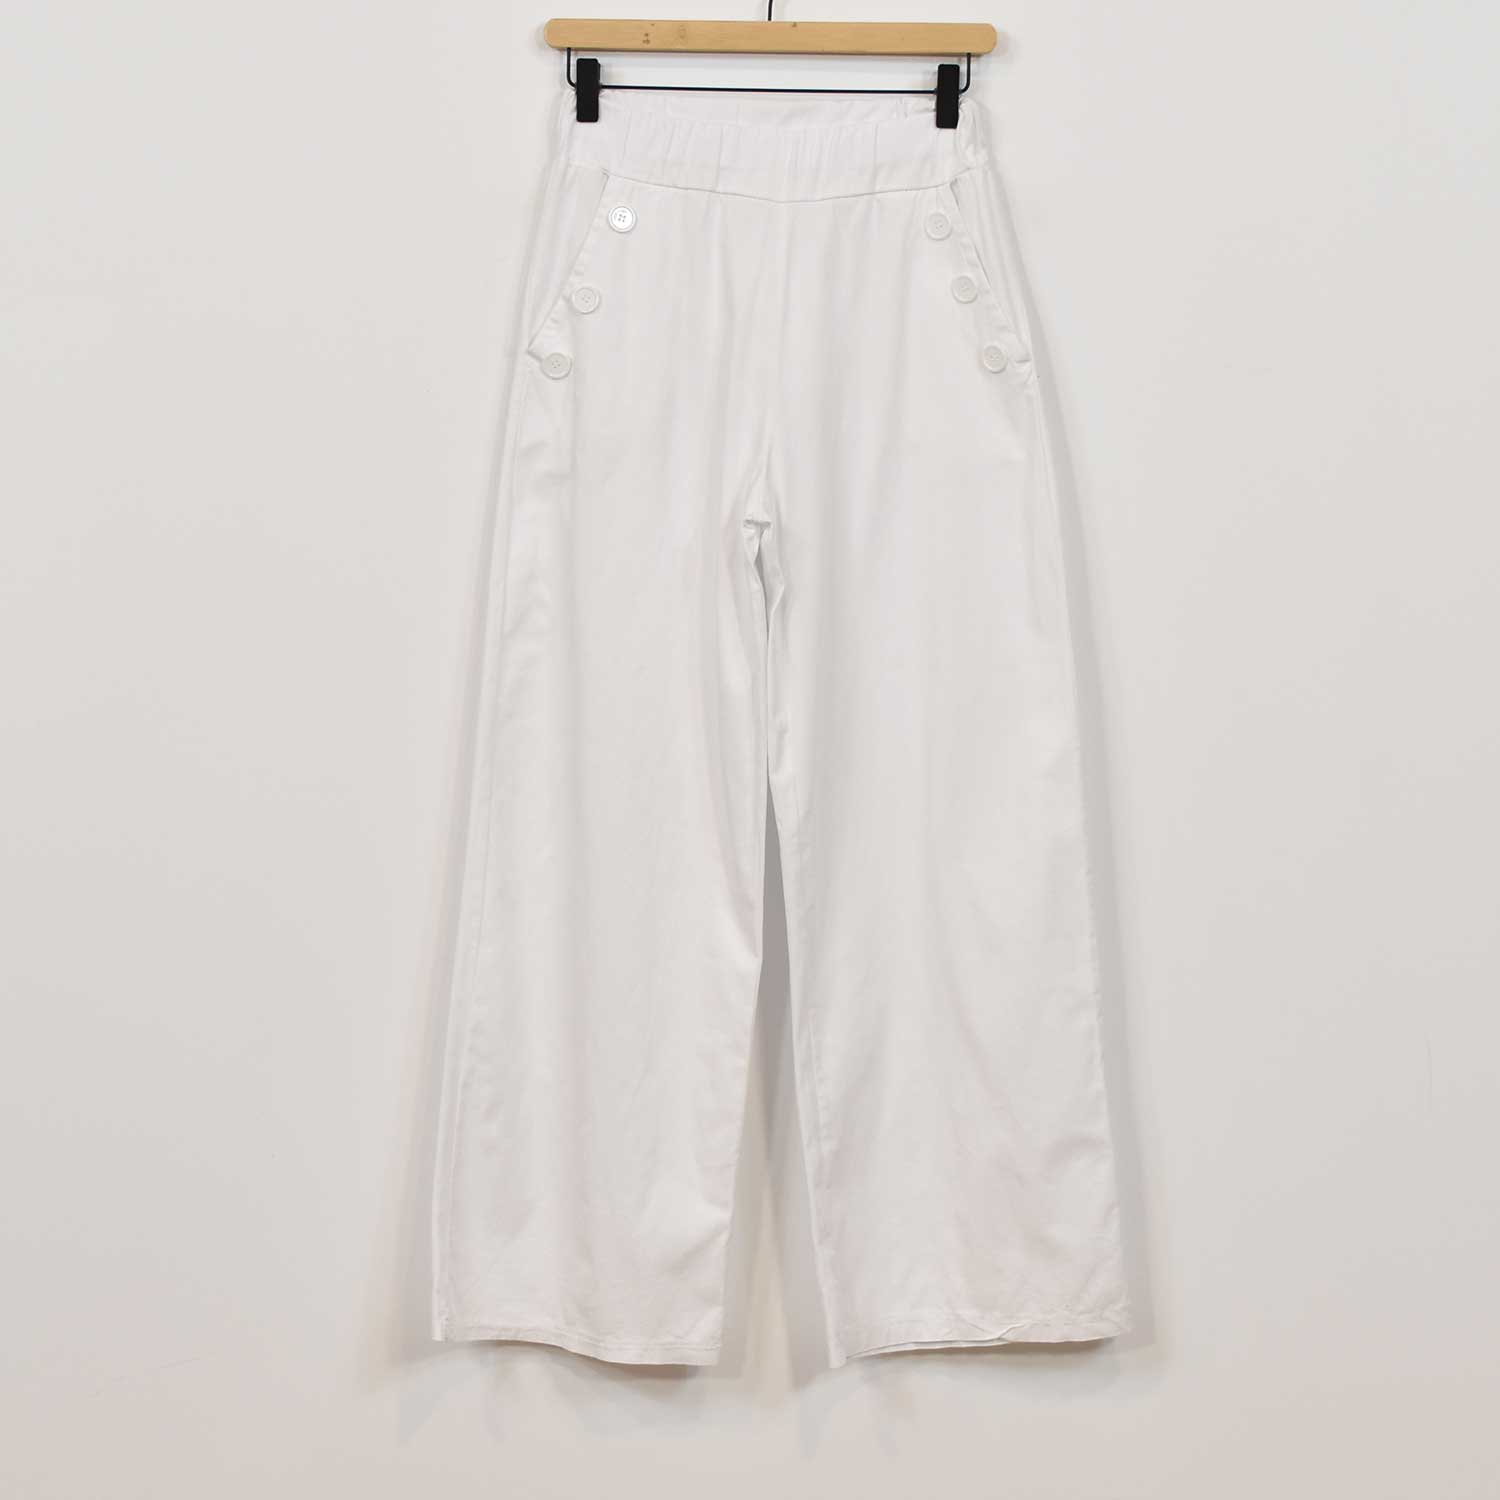 Pantalón navy blanco